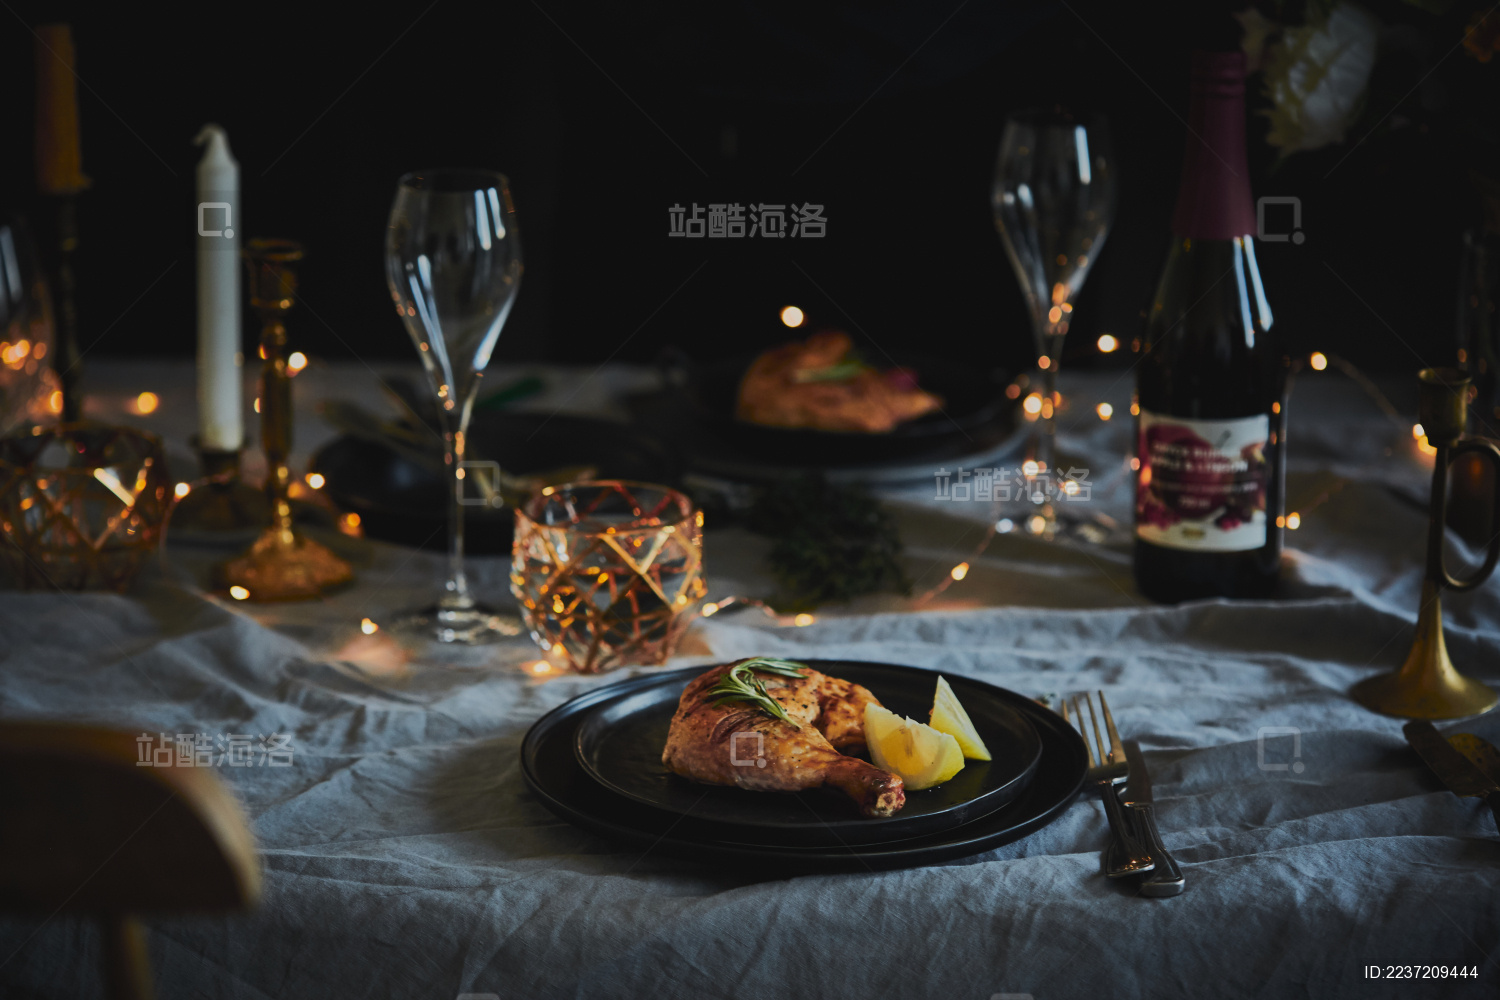 红酒烛光晚餐图片免费下载-5132101297-千图网Pro